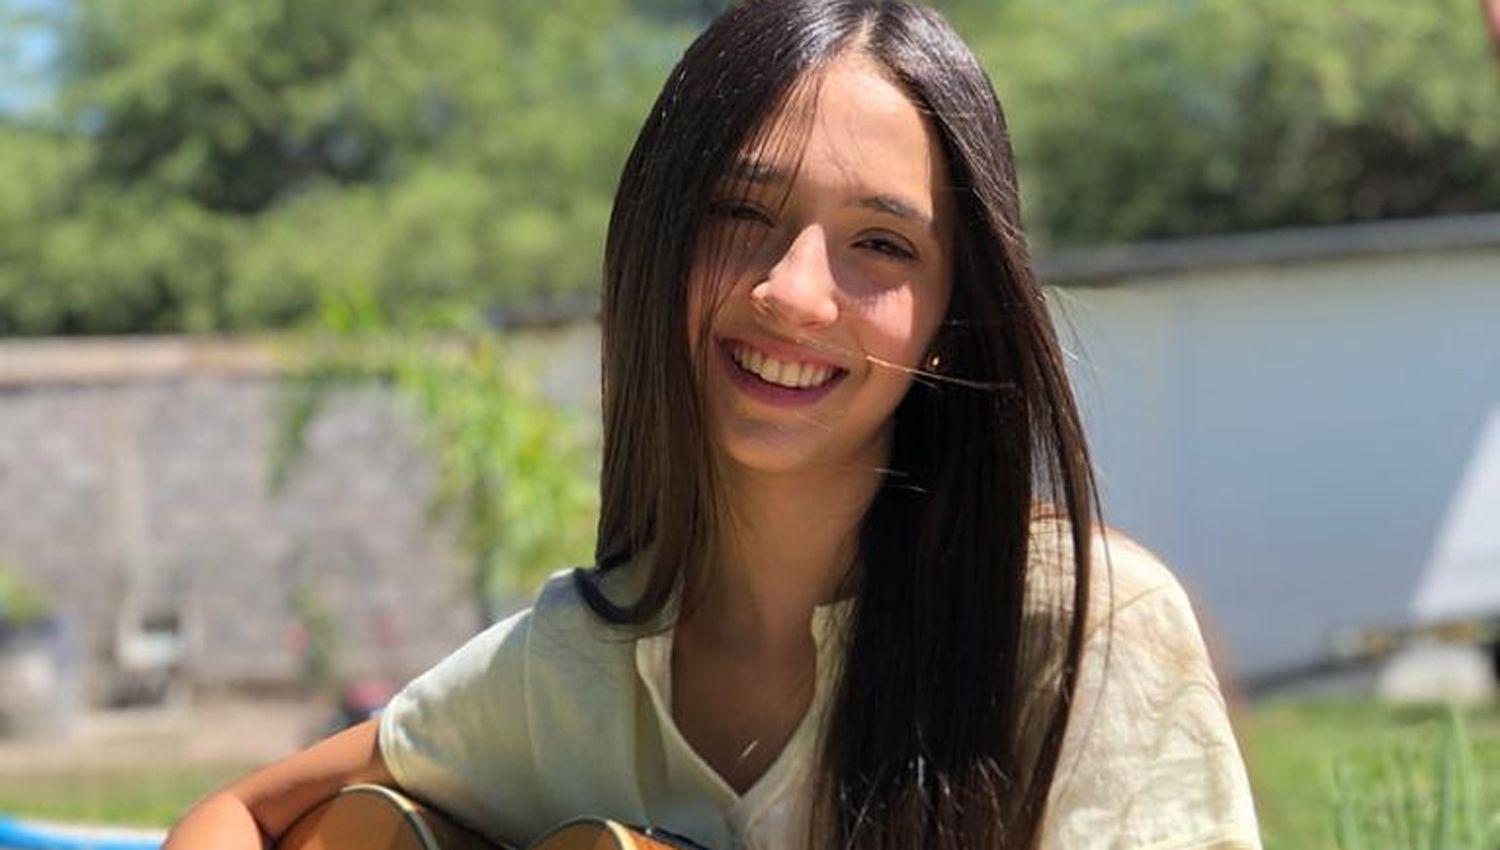 Ariana Castillo desde Santiago planea su proacutexima gira por Latinoameacuterica